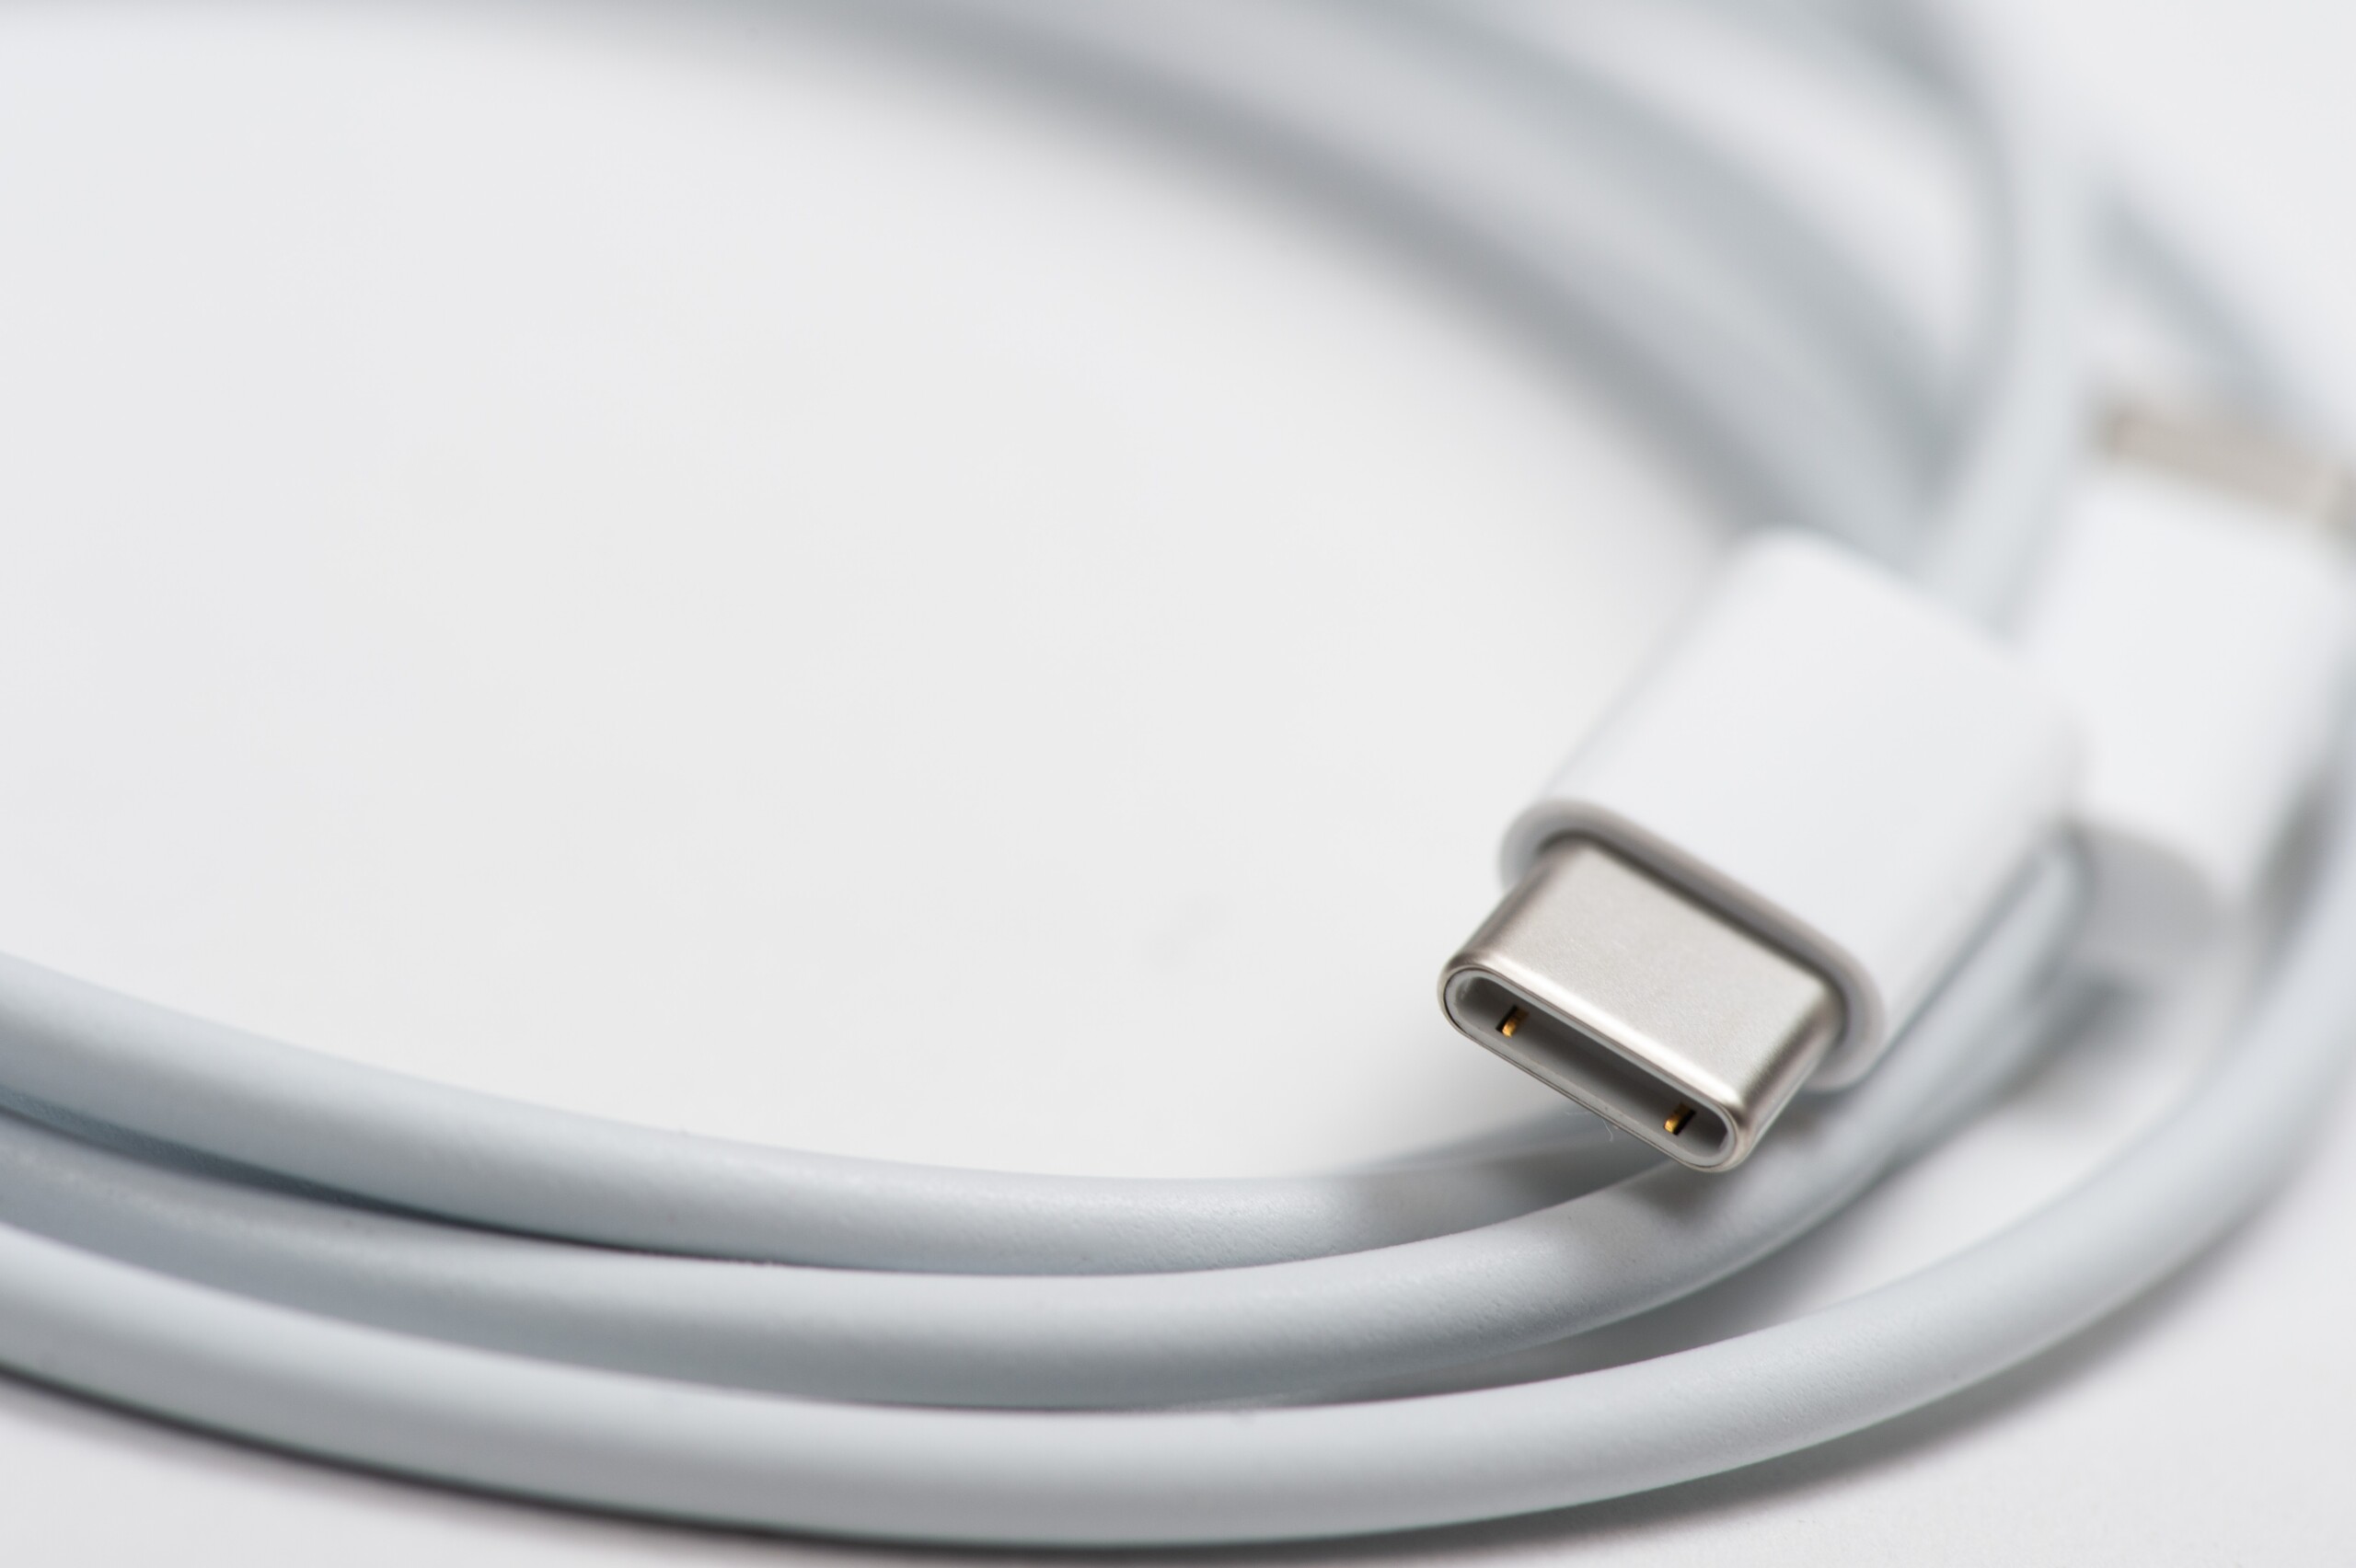 Apple é obrigada a padronizar entrada USB-C nos aparelhos